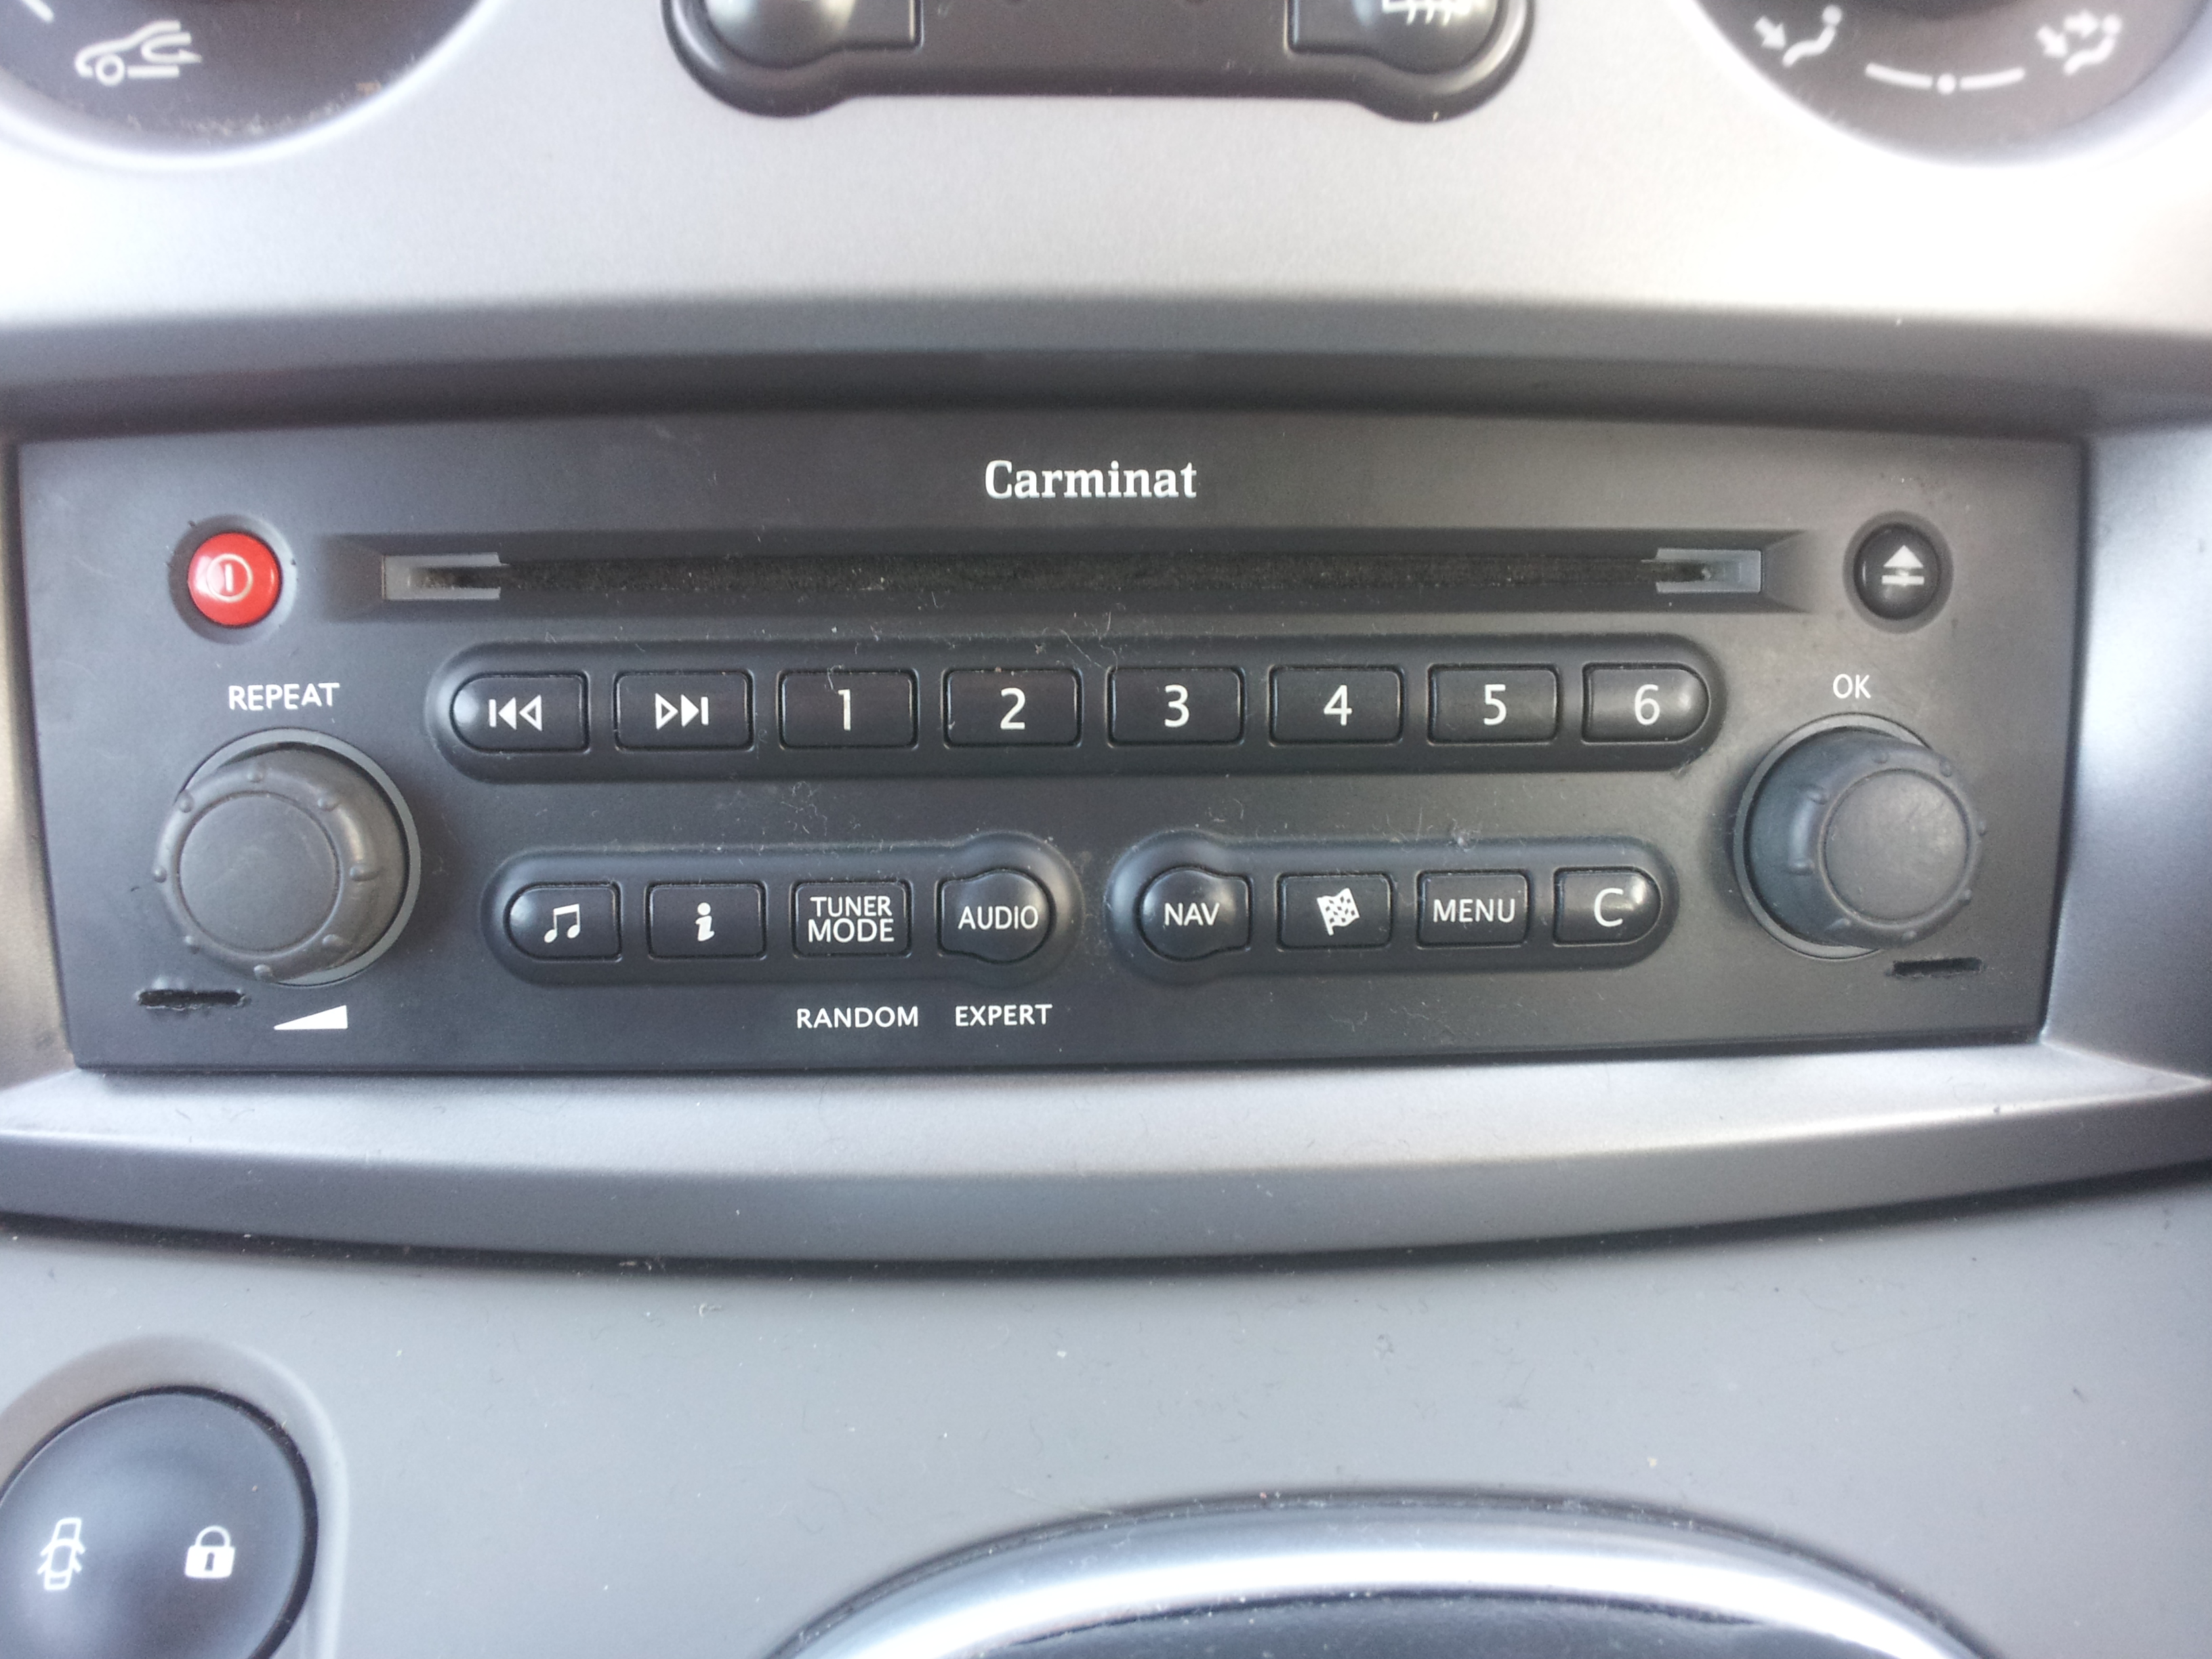 [Scenic II phII] Jak podłaczyć AUX w radiu Carminat Car